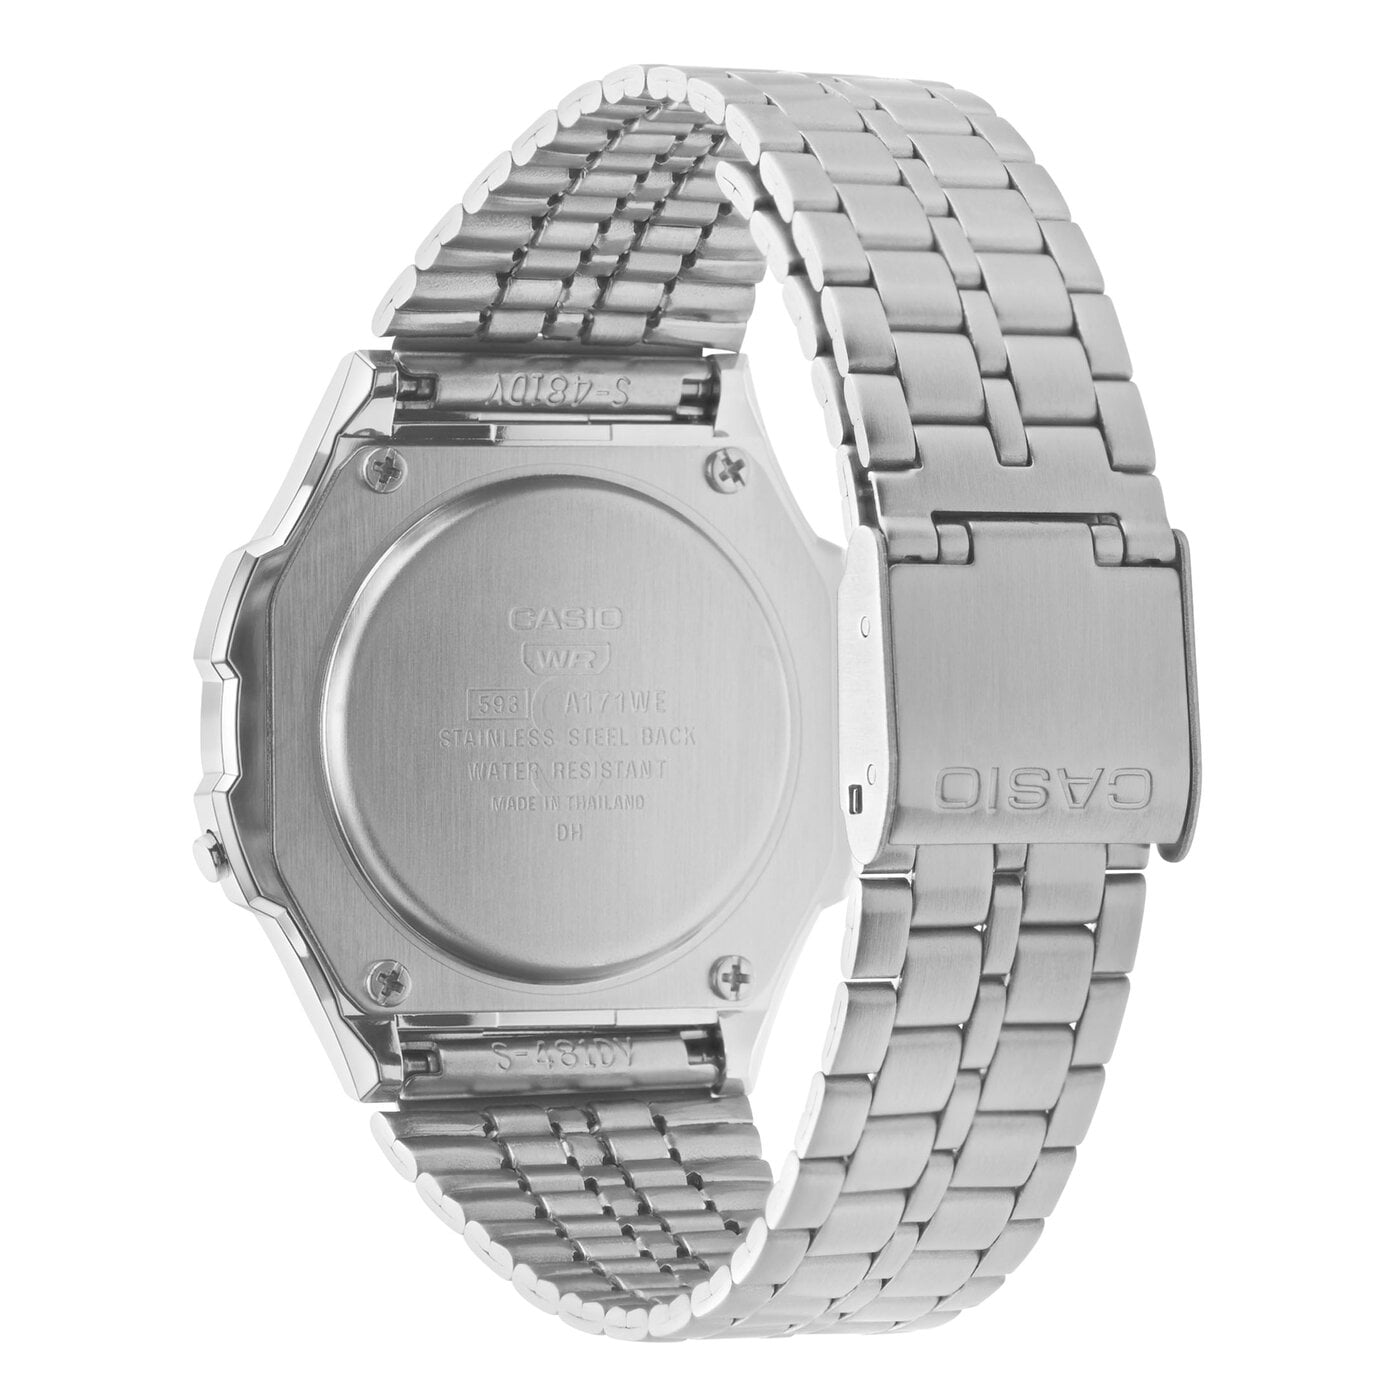 Casio A171WE-1AEF watch